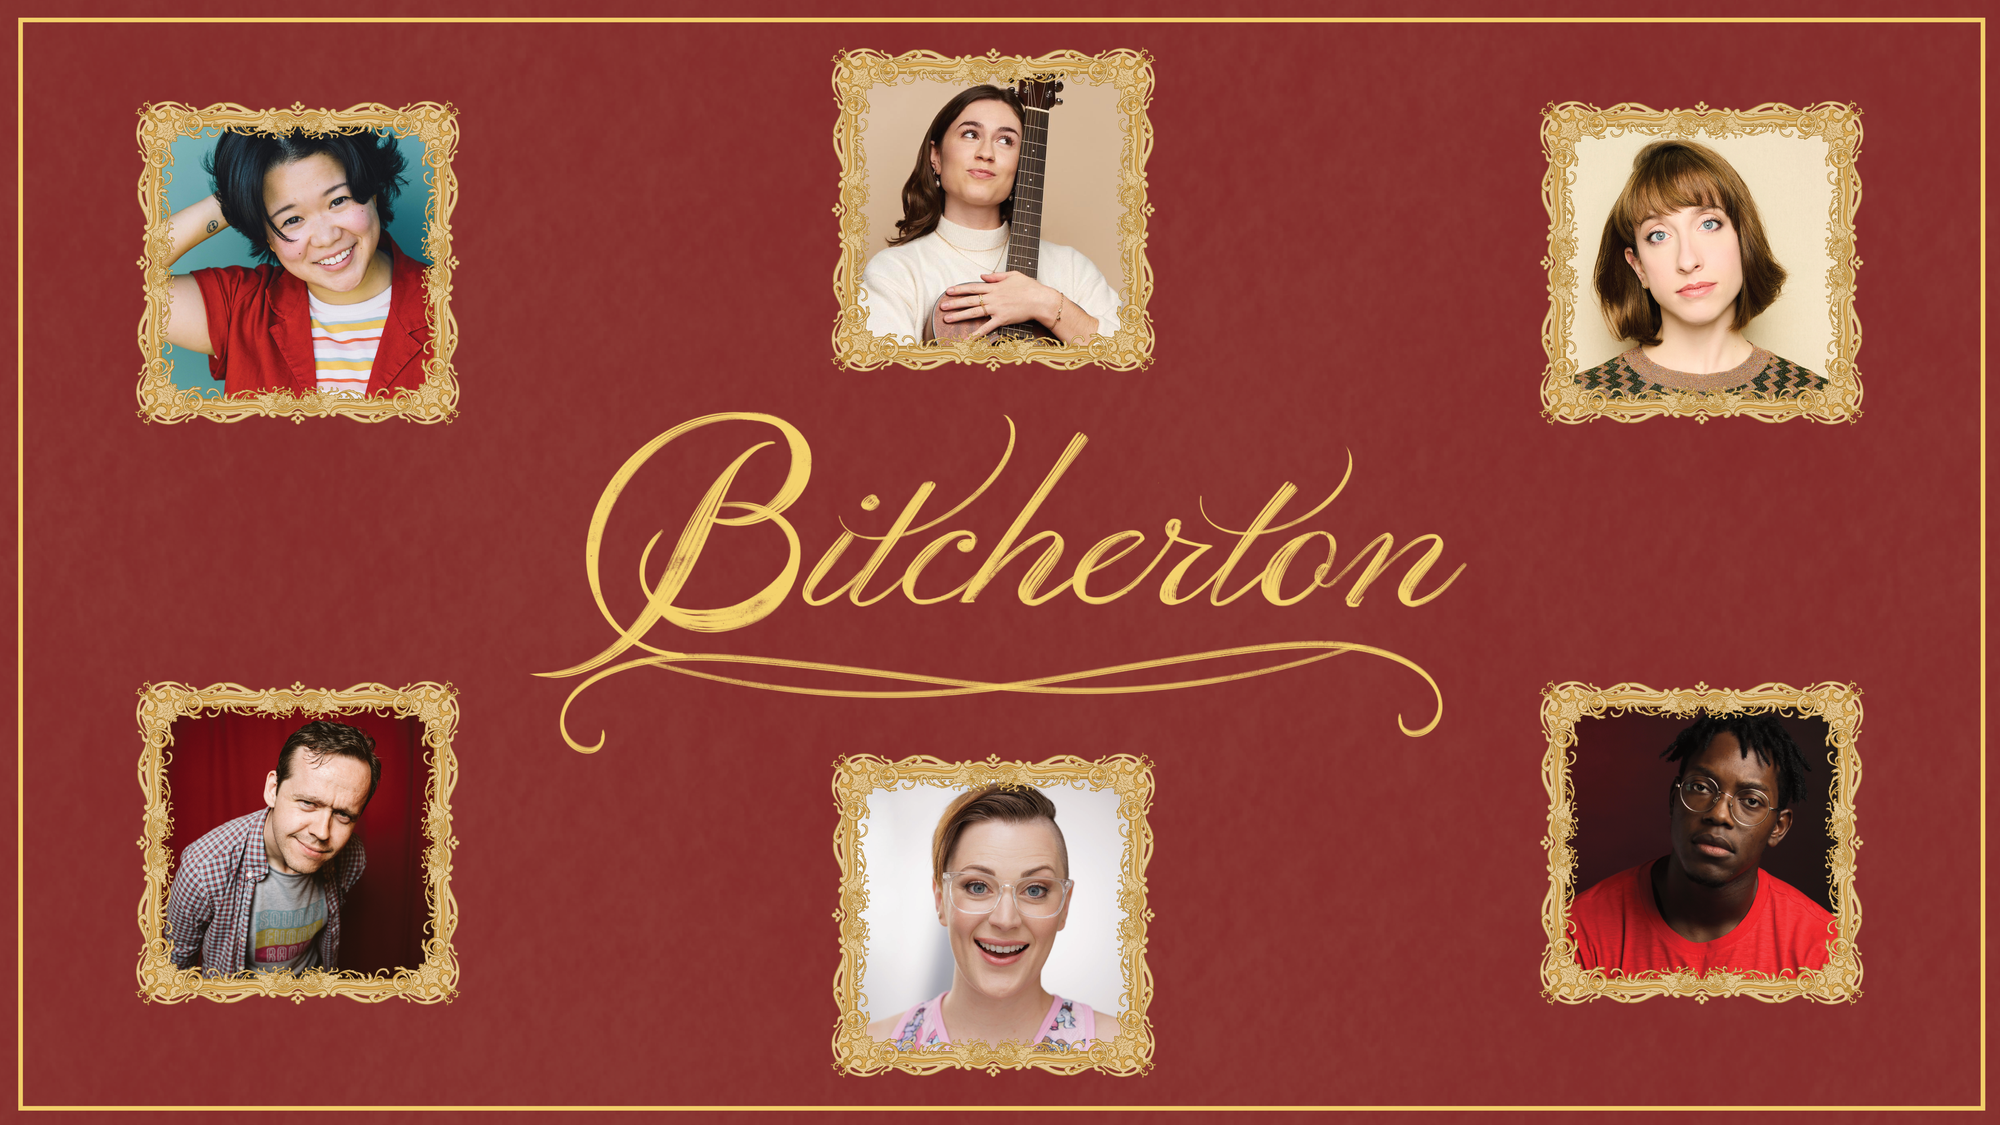 Meet the Bitchertons: Your New Favorite Regency Family